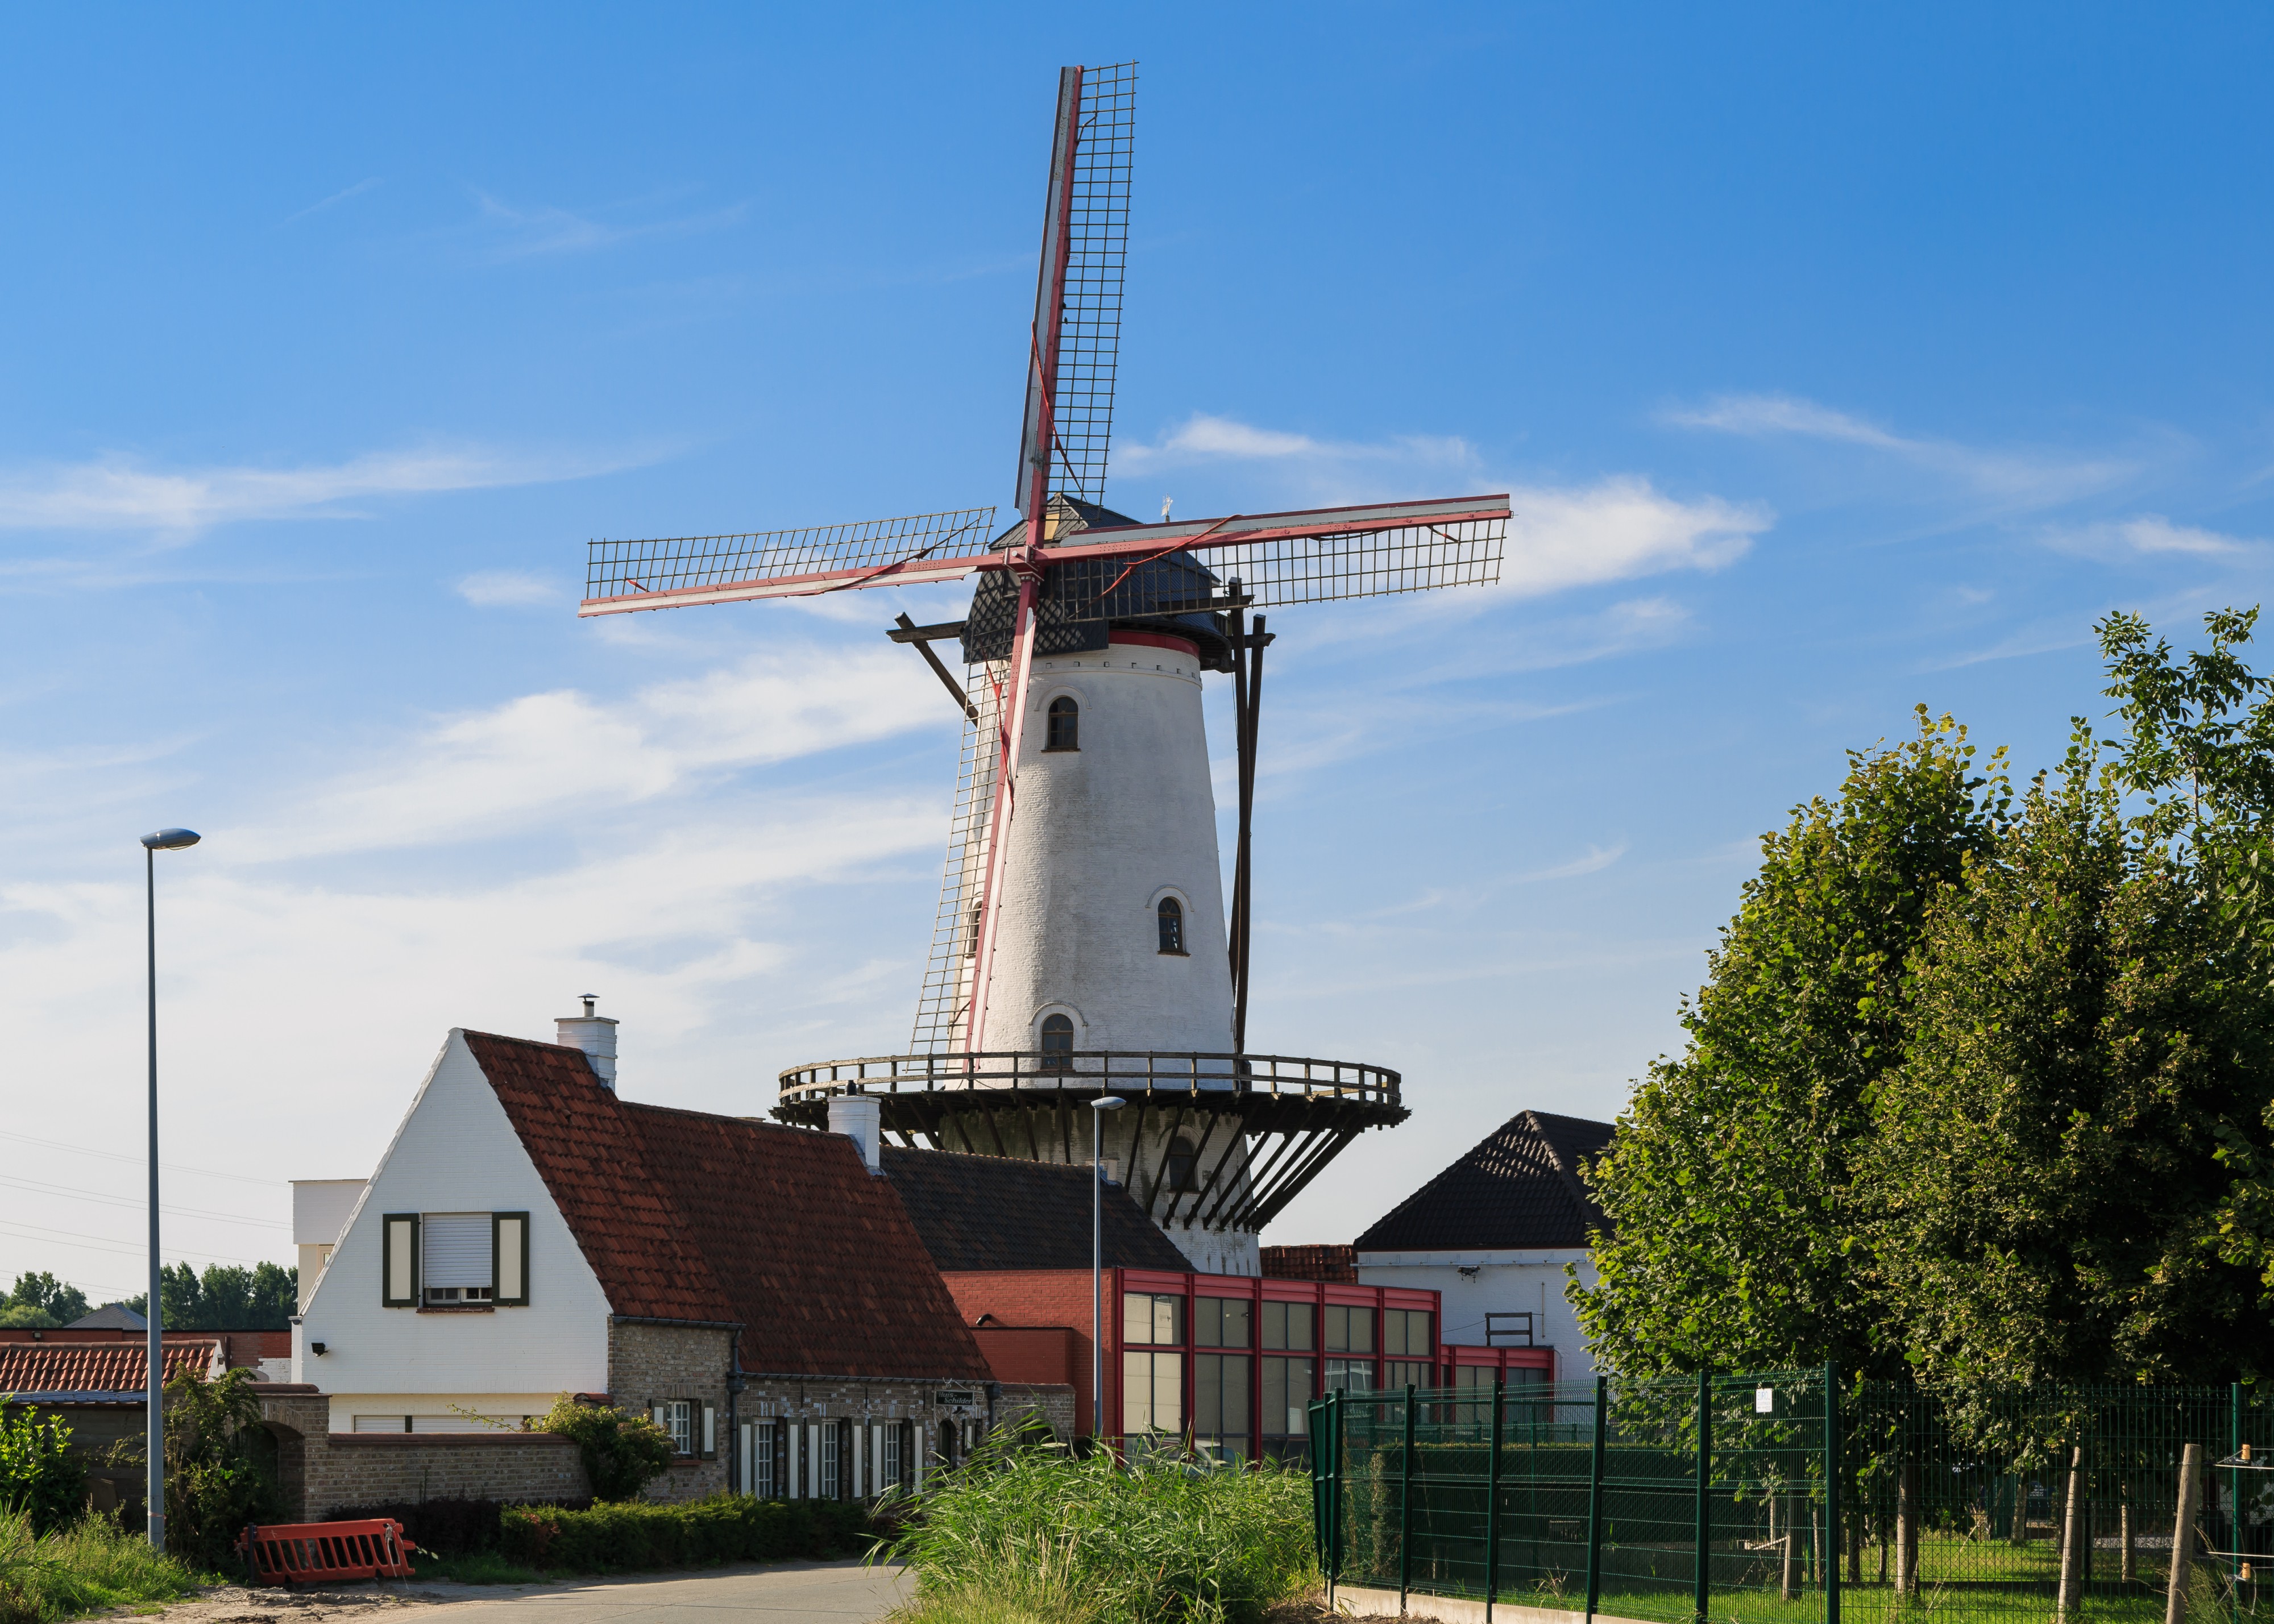 Bruges Belgium Windmill-Zandwegemolen-01